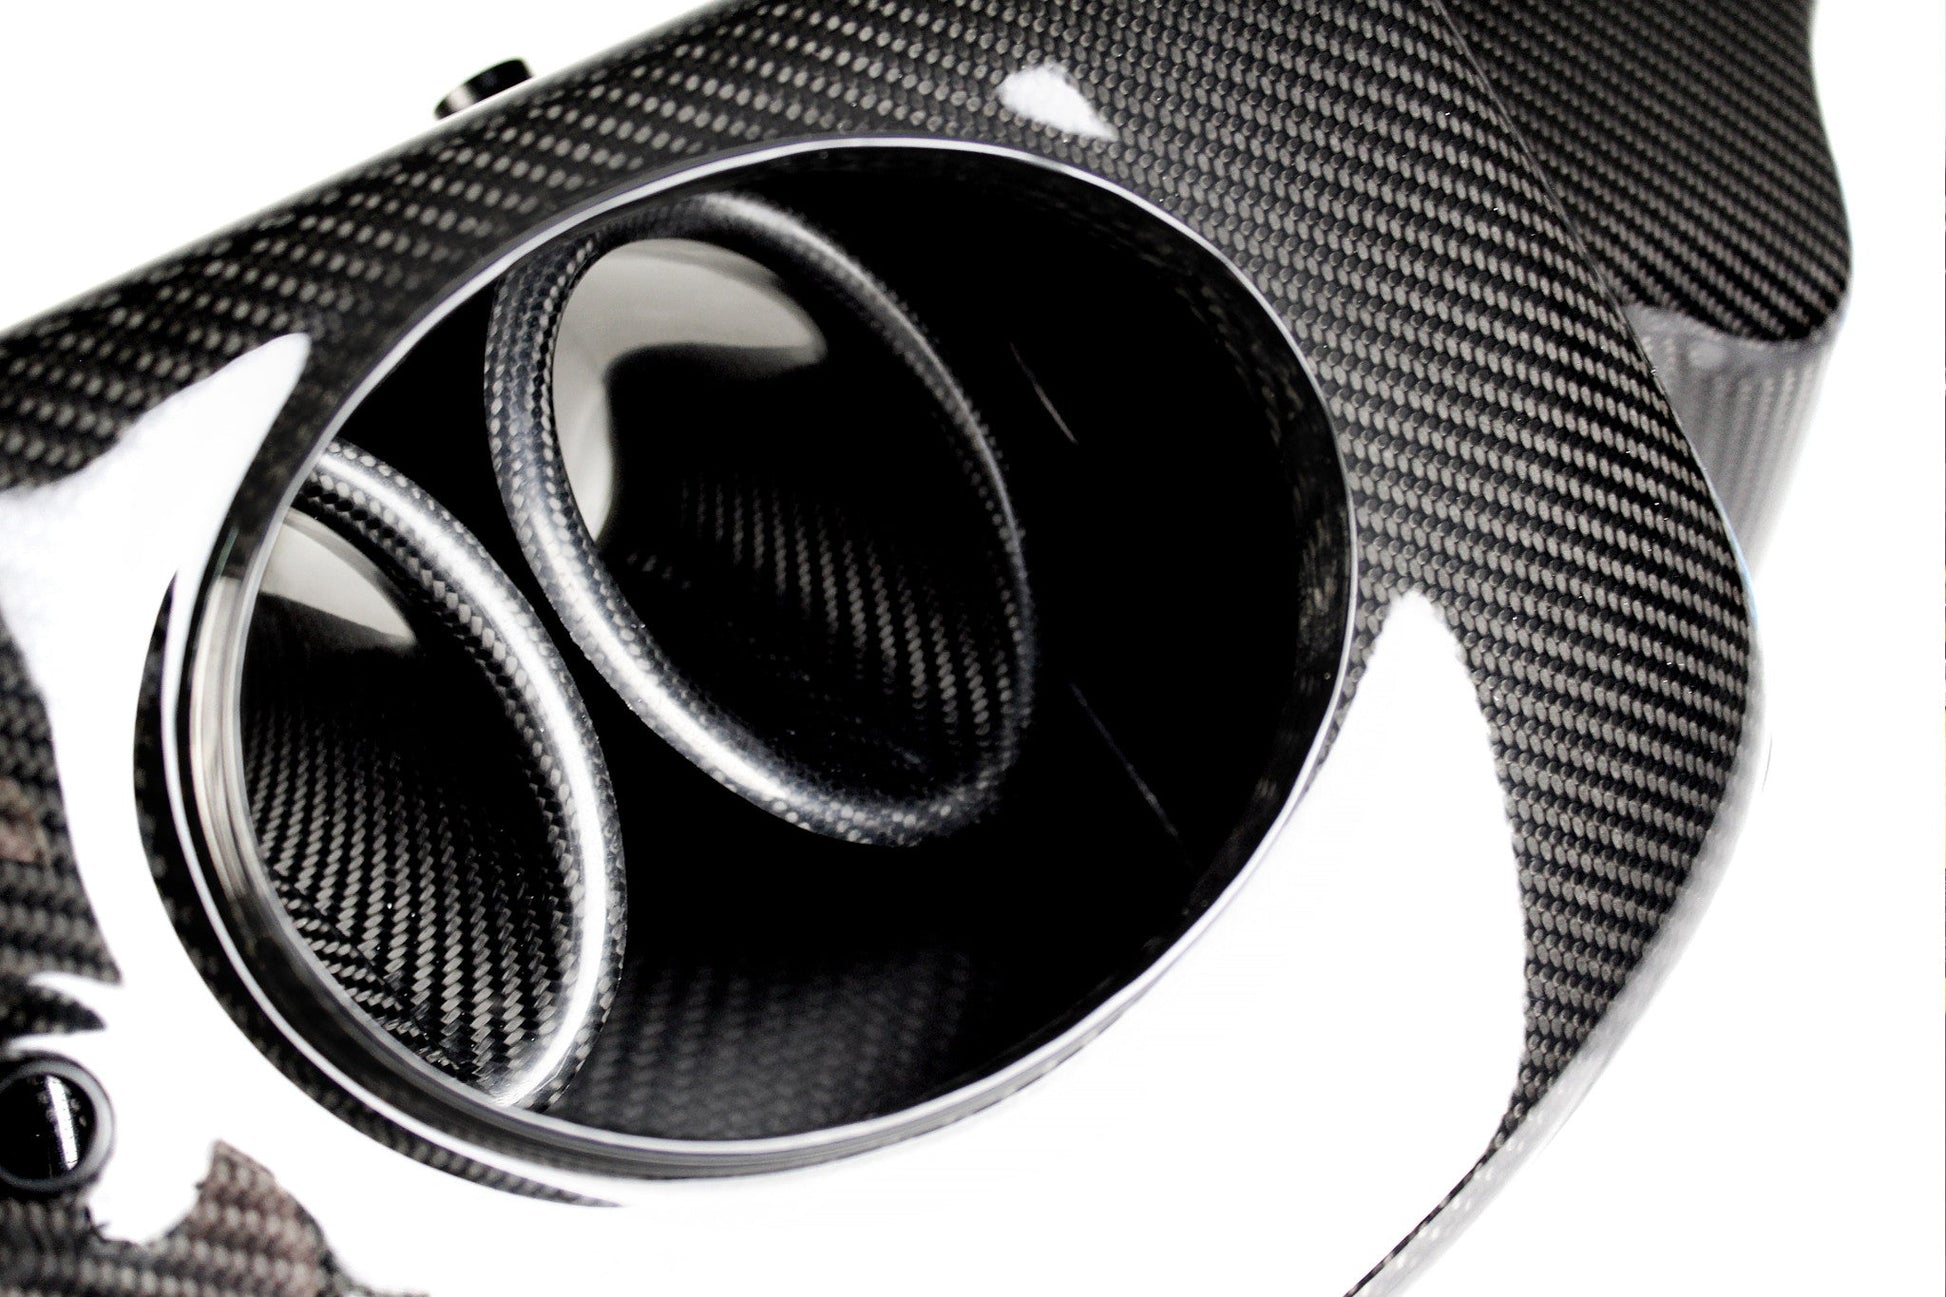 Karbonius Carbon Fibre Airbox OEM Style - BMW E46 M3 / Z4M - Evolve Automotive